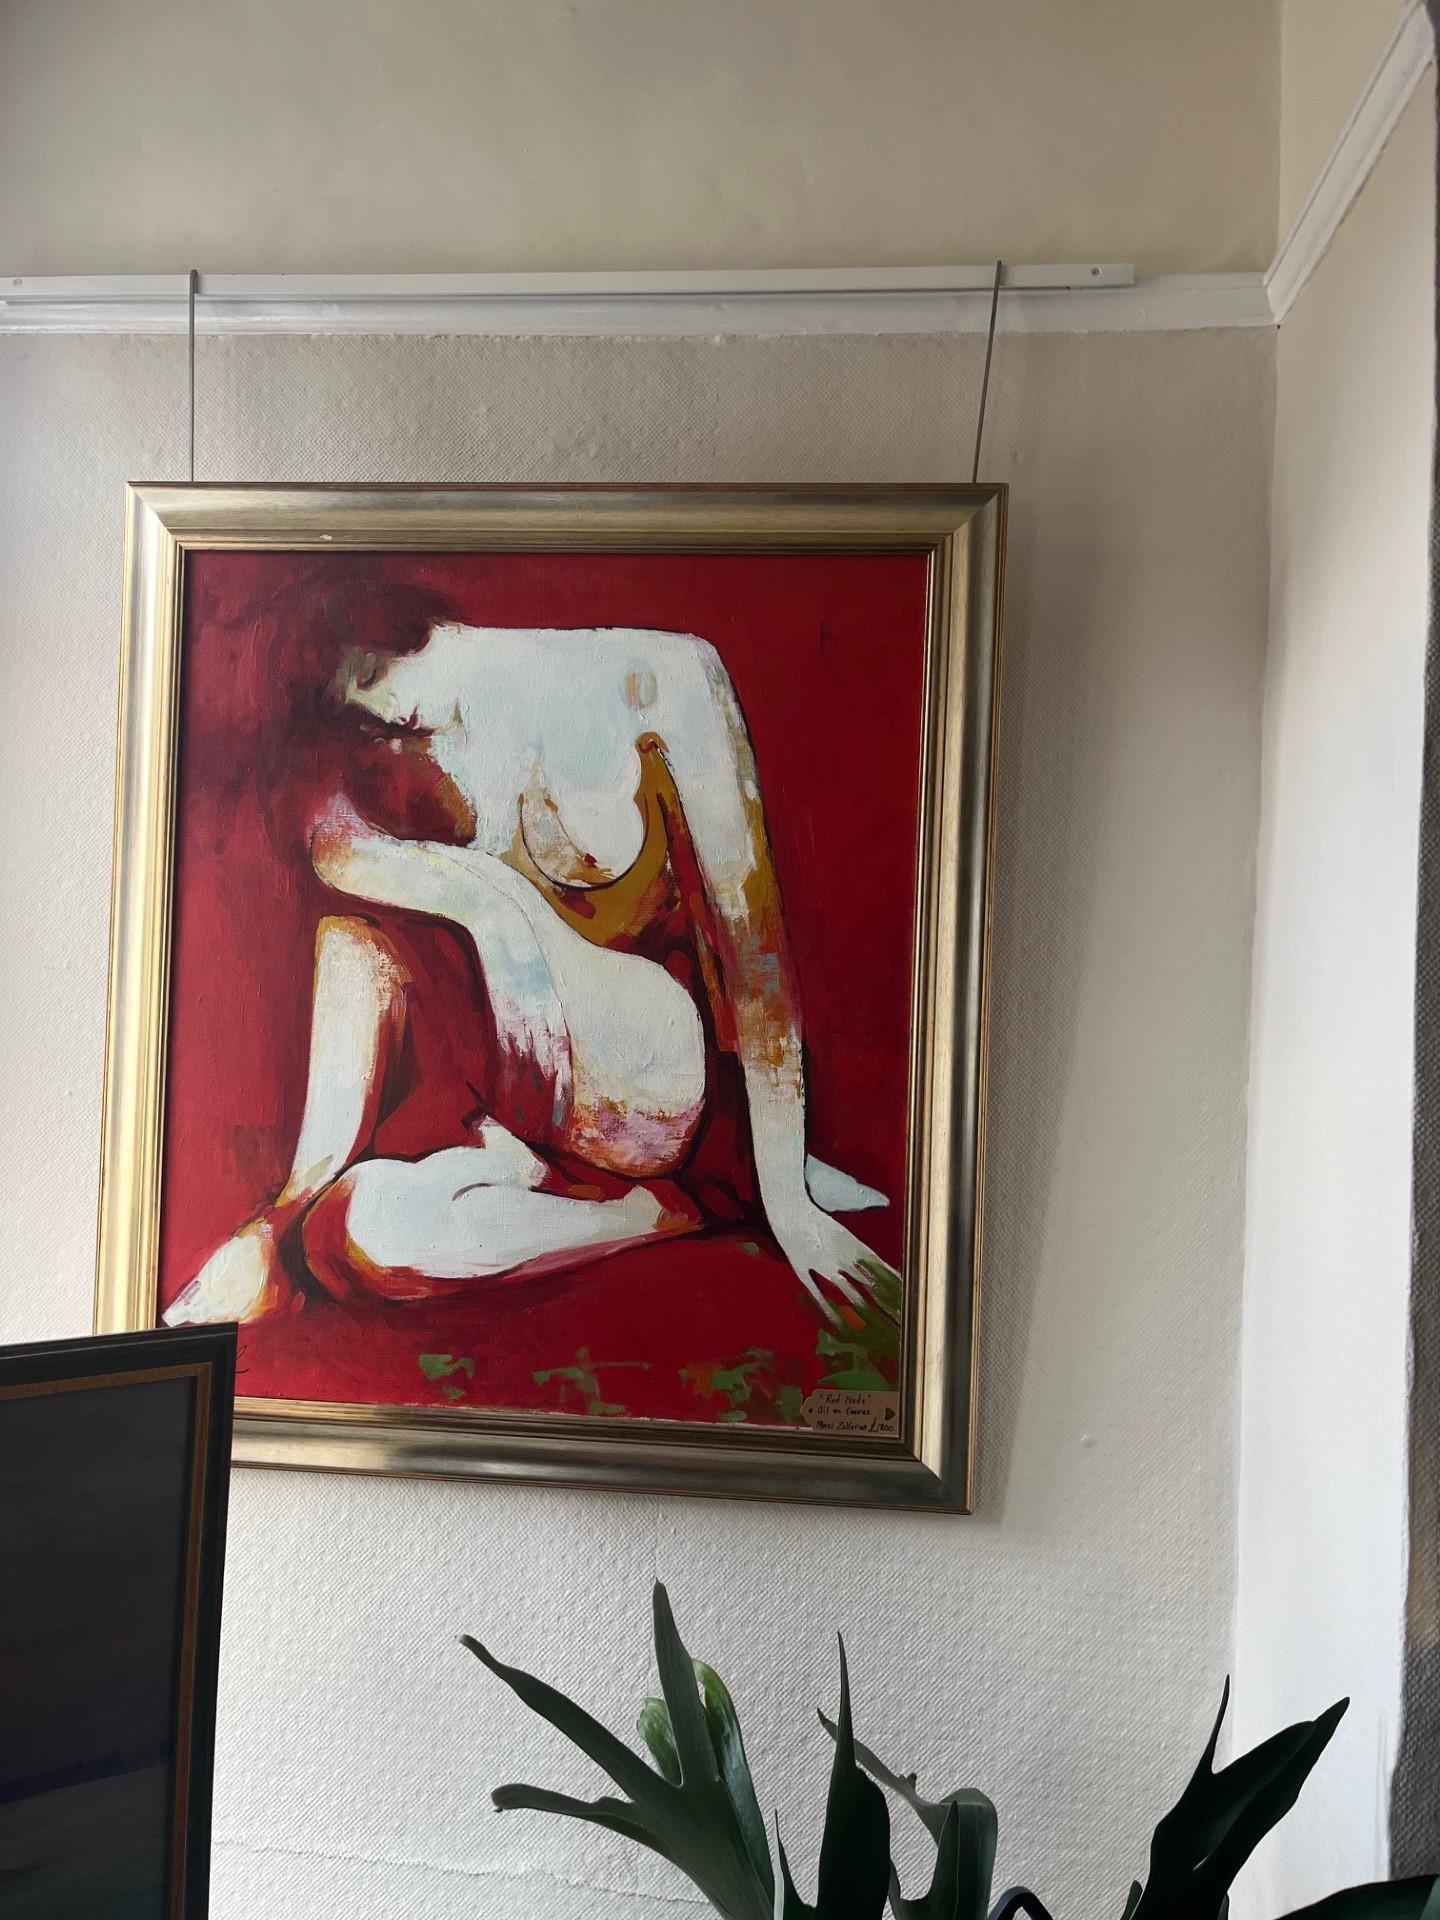 Grande peinture à l'huile sur toile, montée sur châssis et encadrée.  Grande figure assise d'une dame nue sur fond rouge et application de peinture aux couleurs vives.

